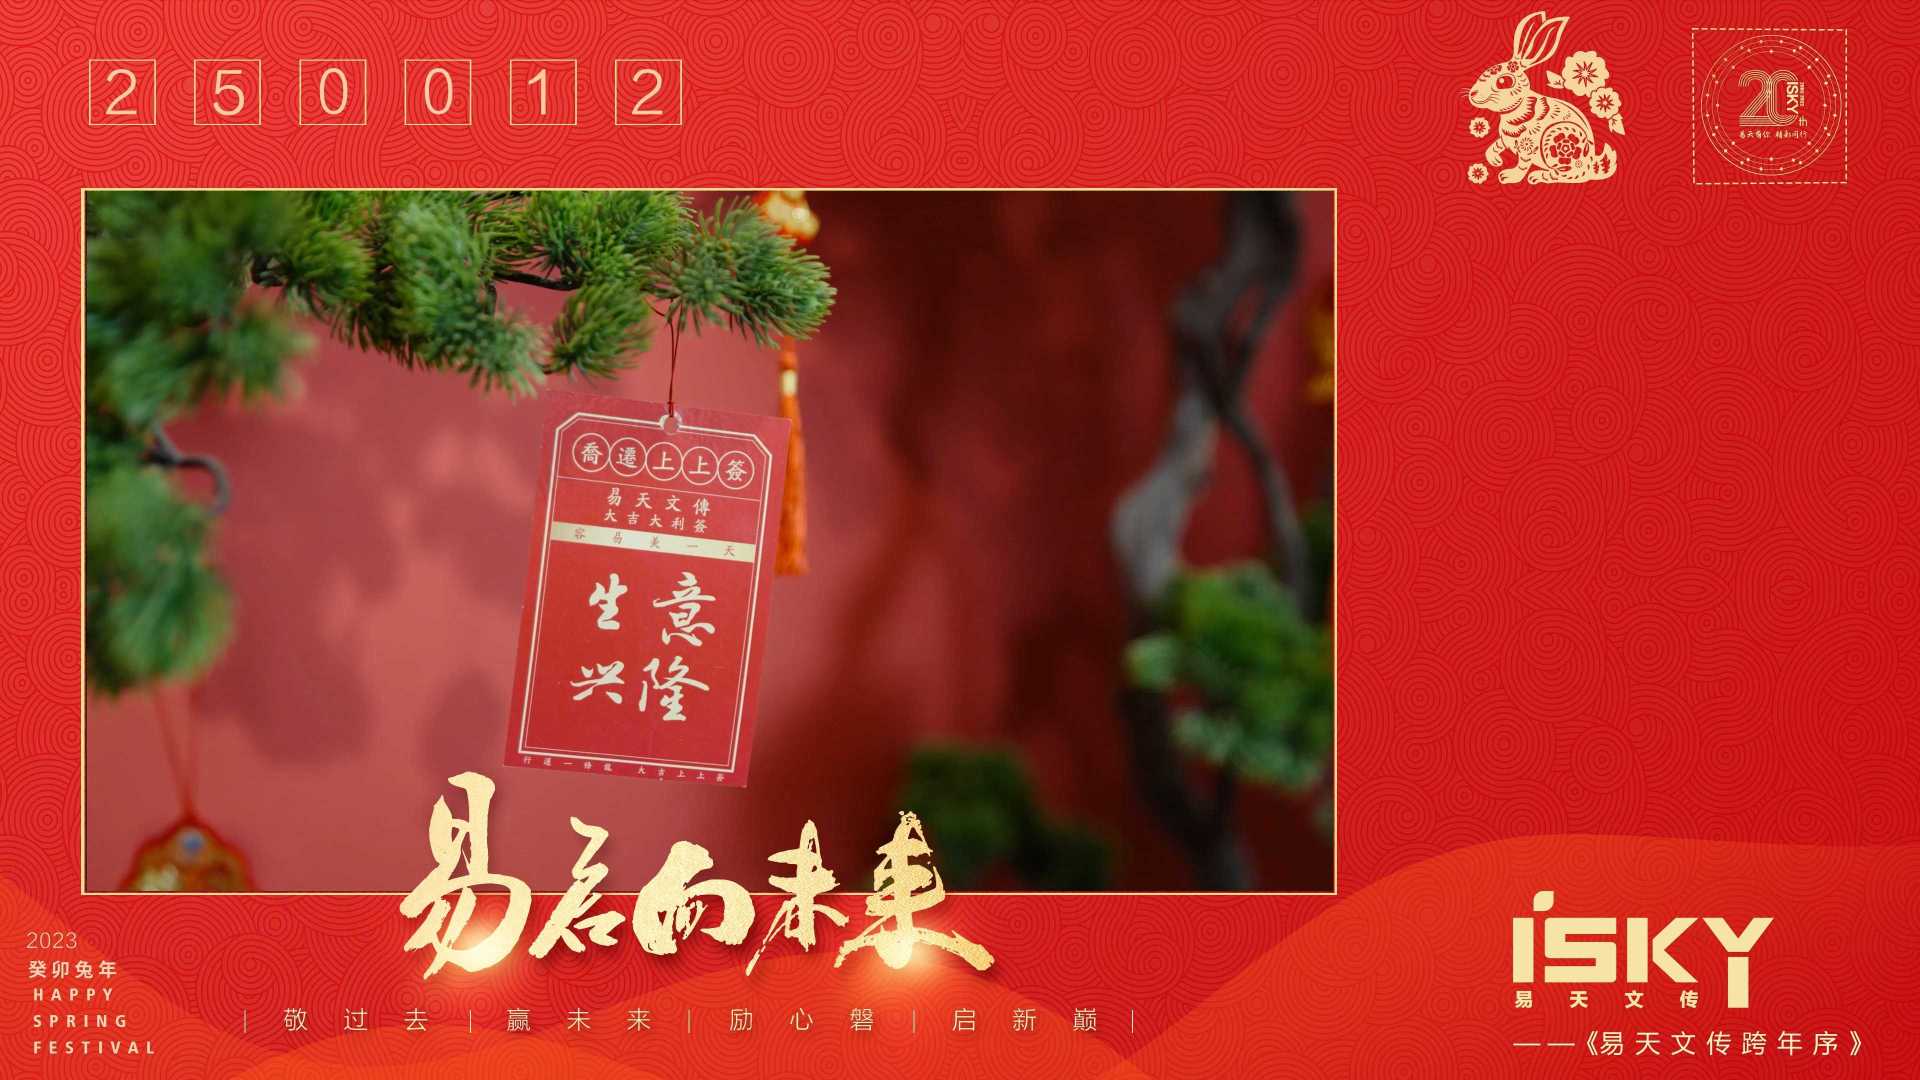 易天文传2023年新春视频《易启向未来》 信封版